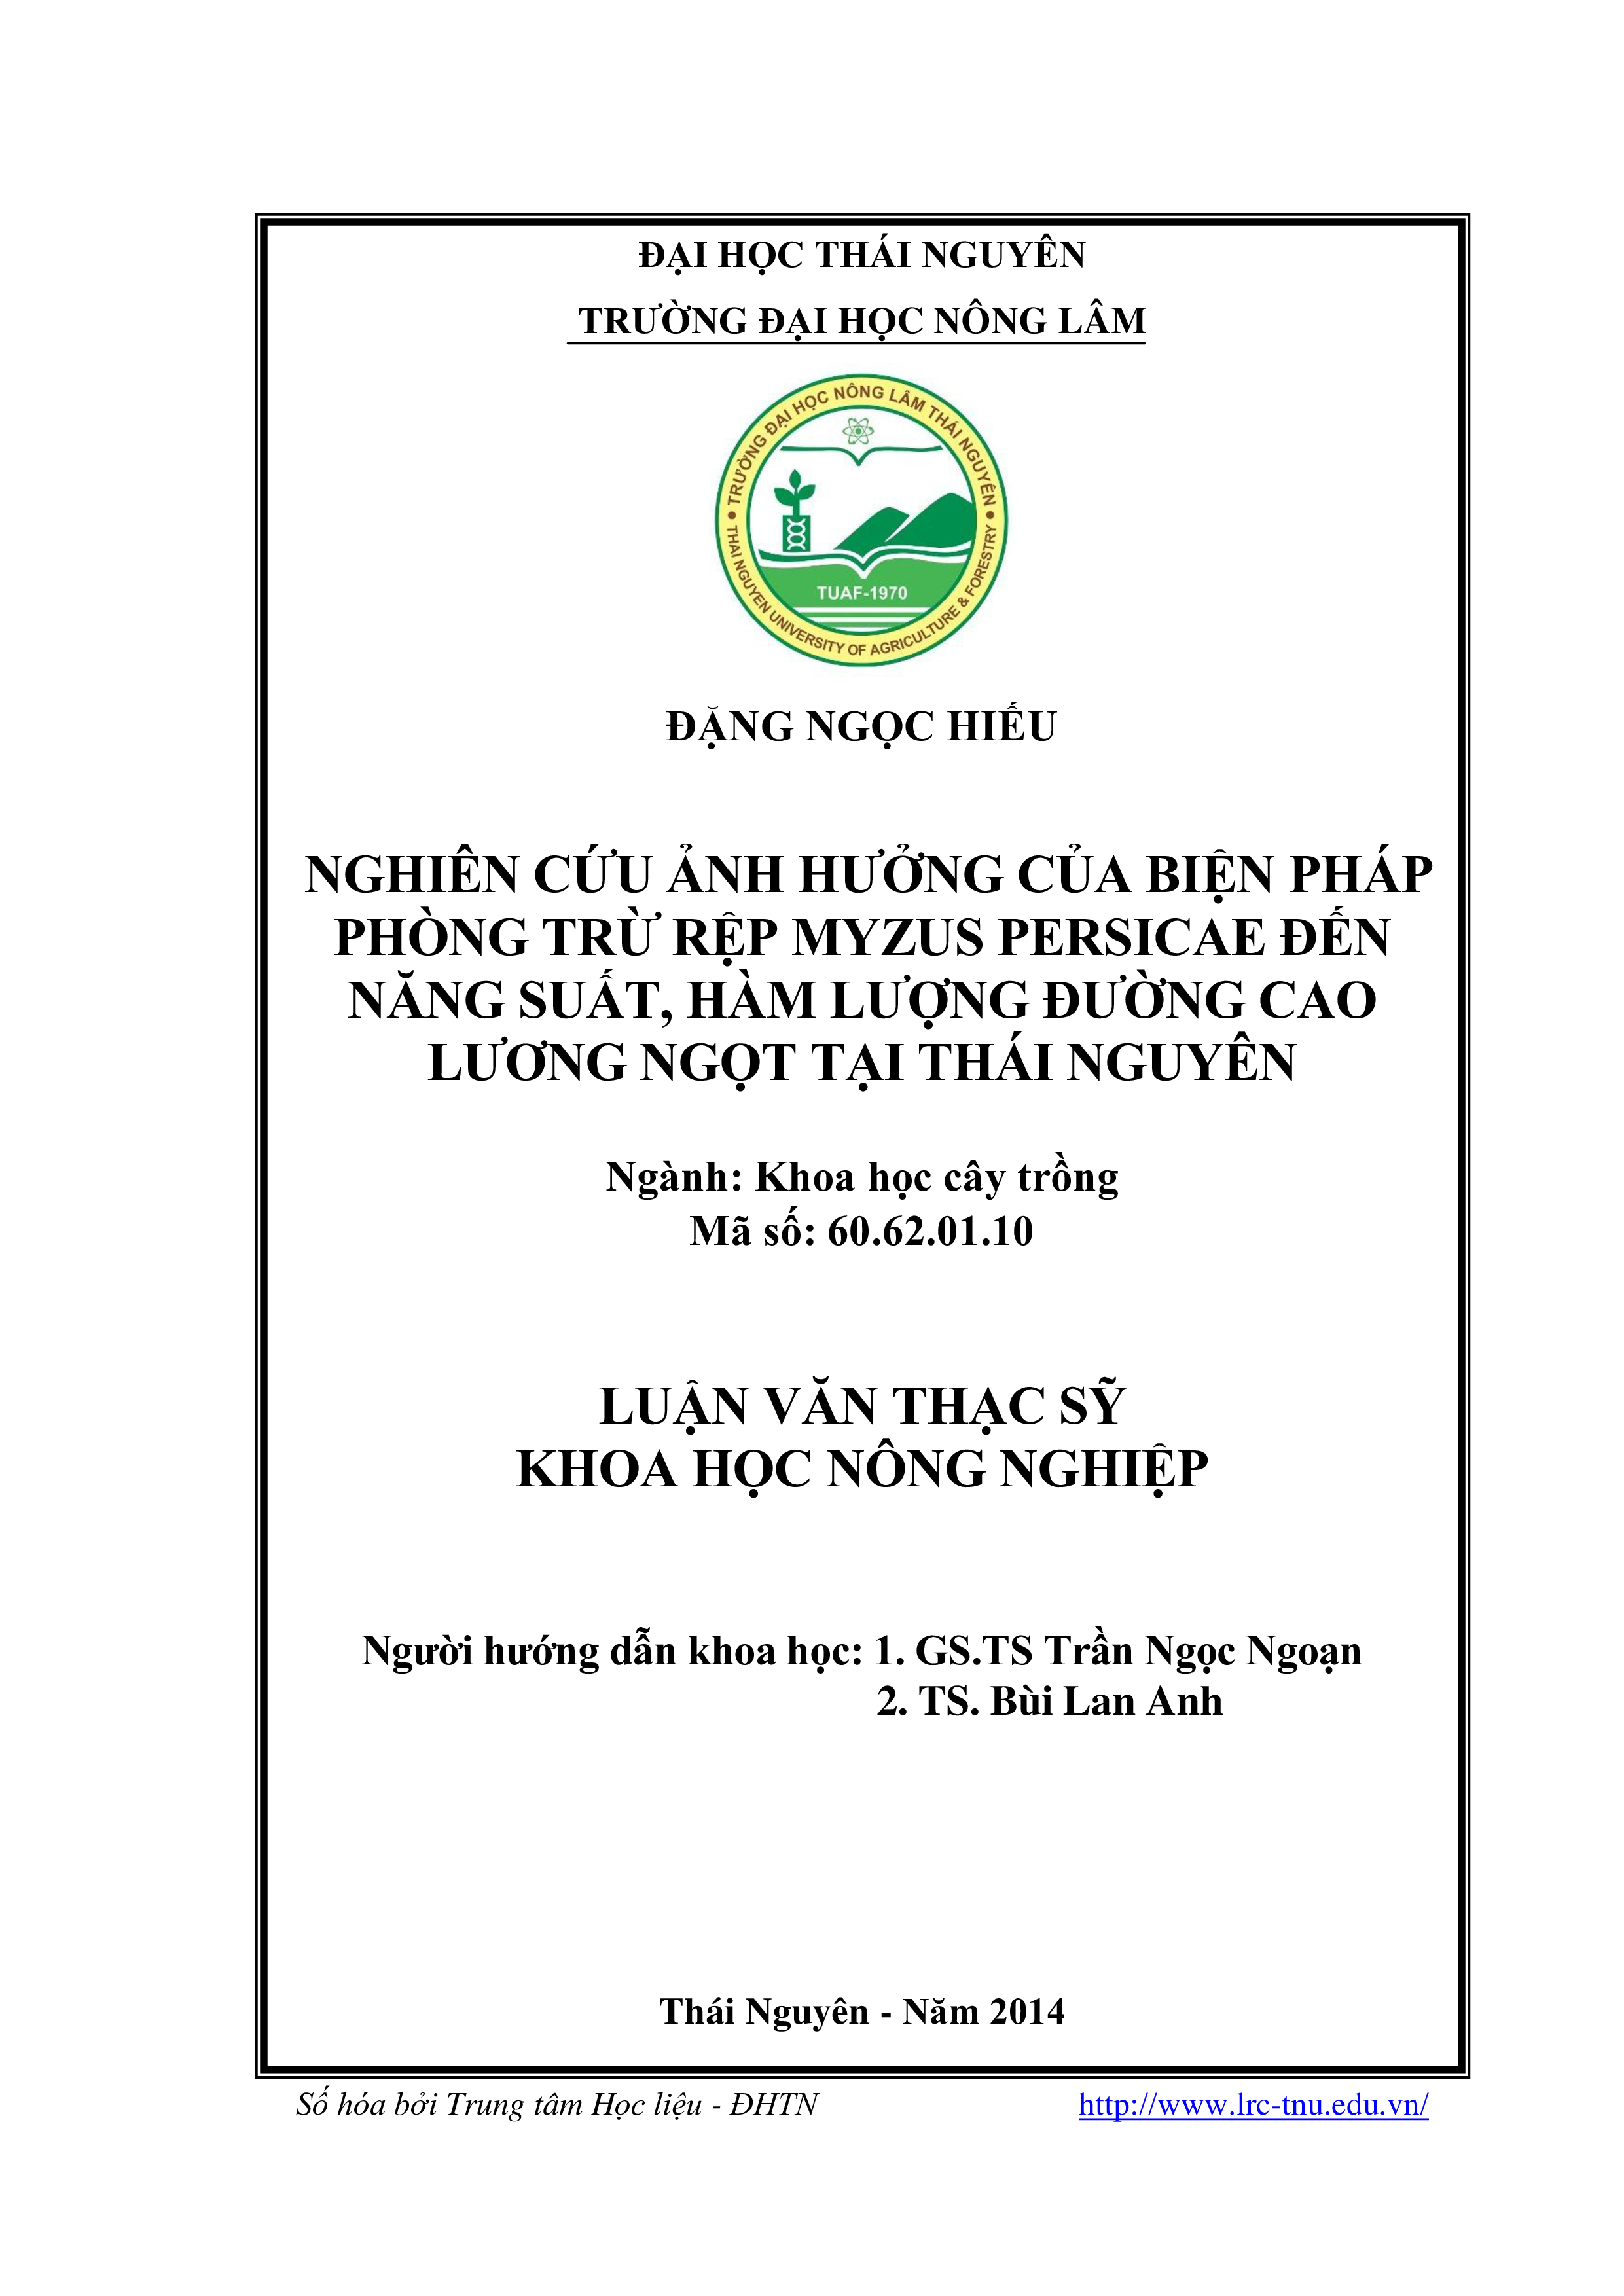 Nghiên cứu ảnh hưởng của biện pháp phòng trừ rệp Myzus persicae đến năng suất, hàm lượng đường cao lương ngọt  tại Thái Nguyên